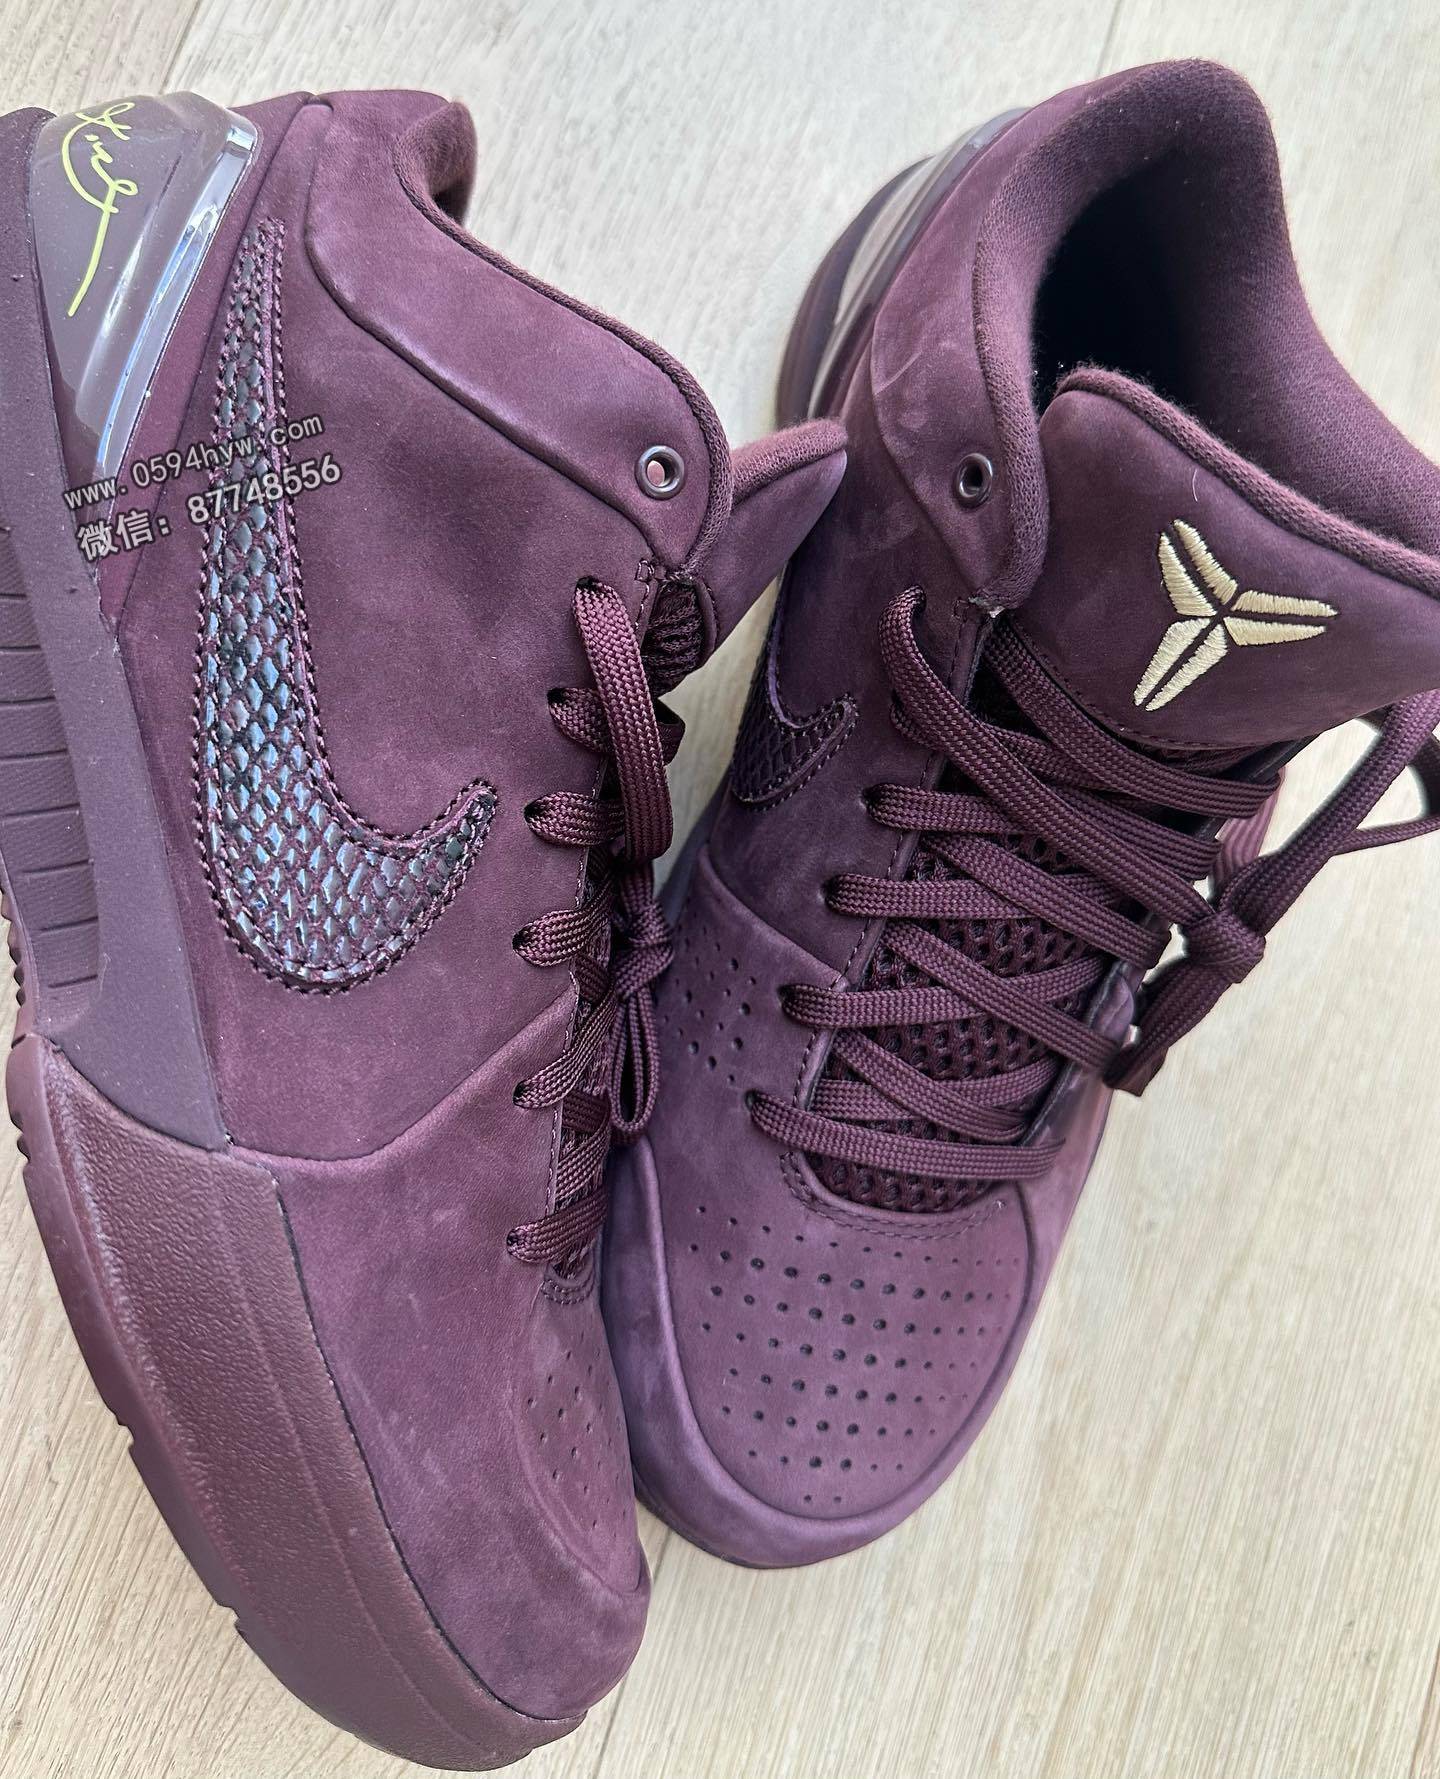 网友呼吁瓦妮莎分享全新Kobe 4球鞋配色，期待即将到来的发售。